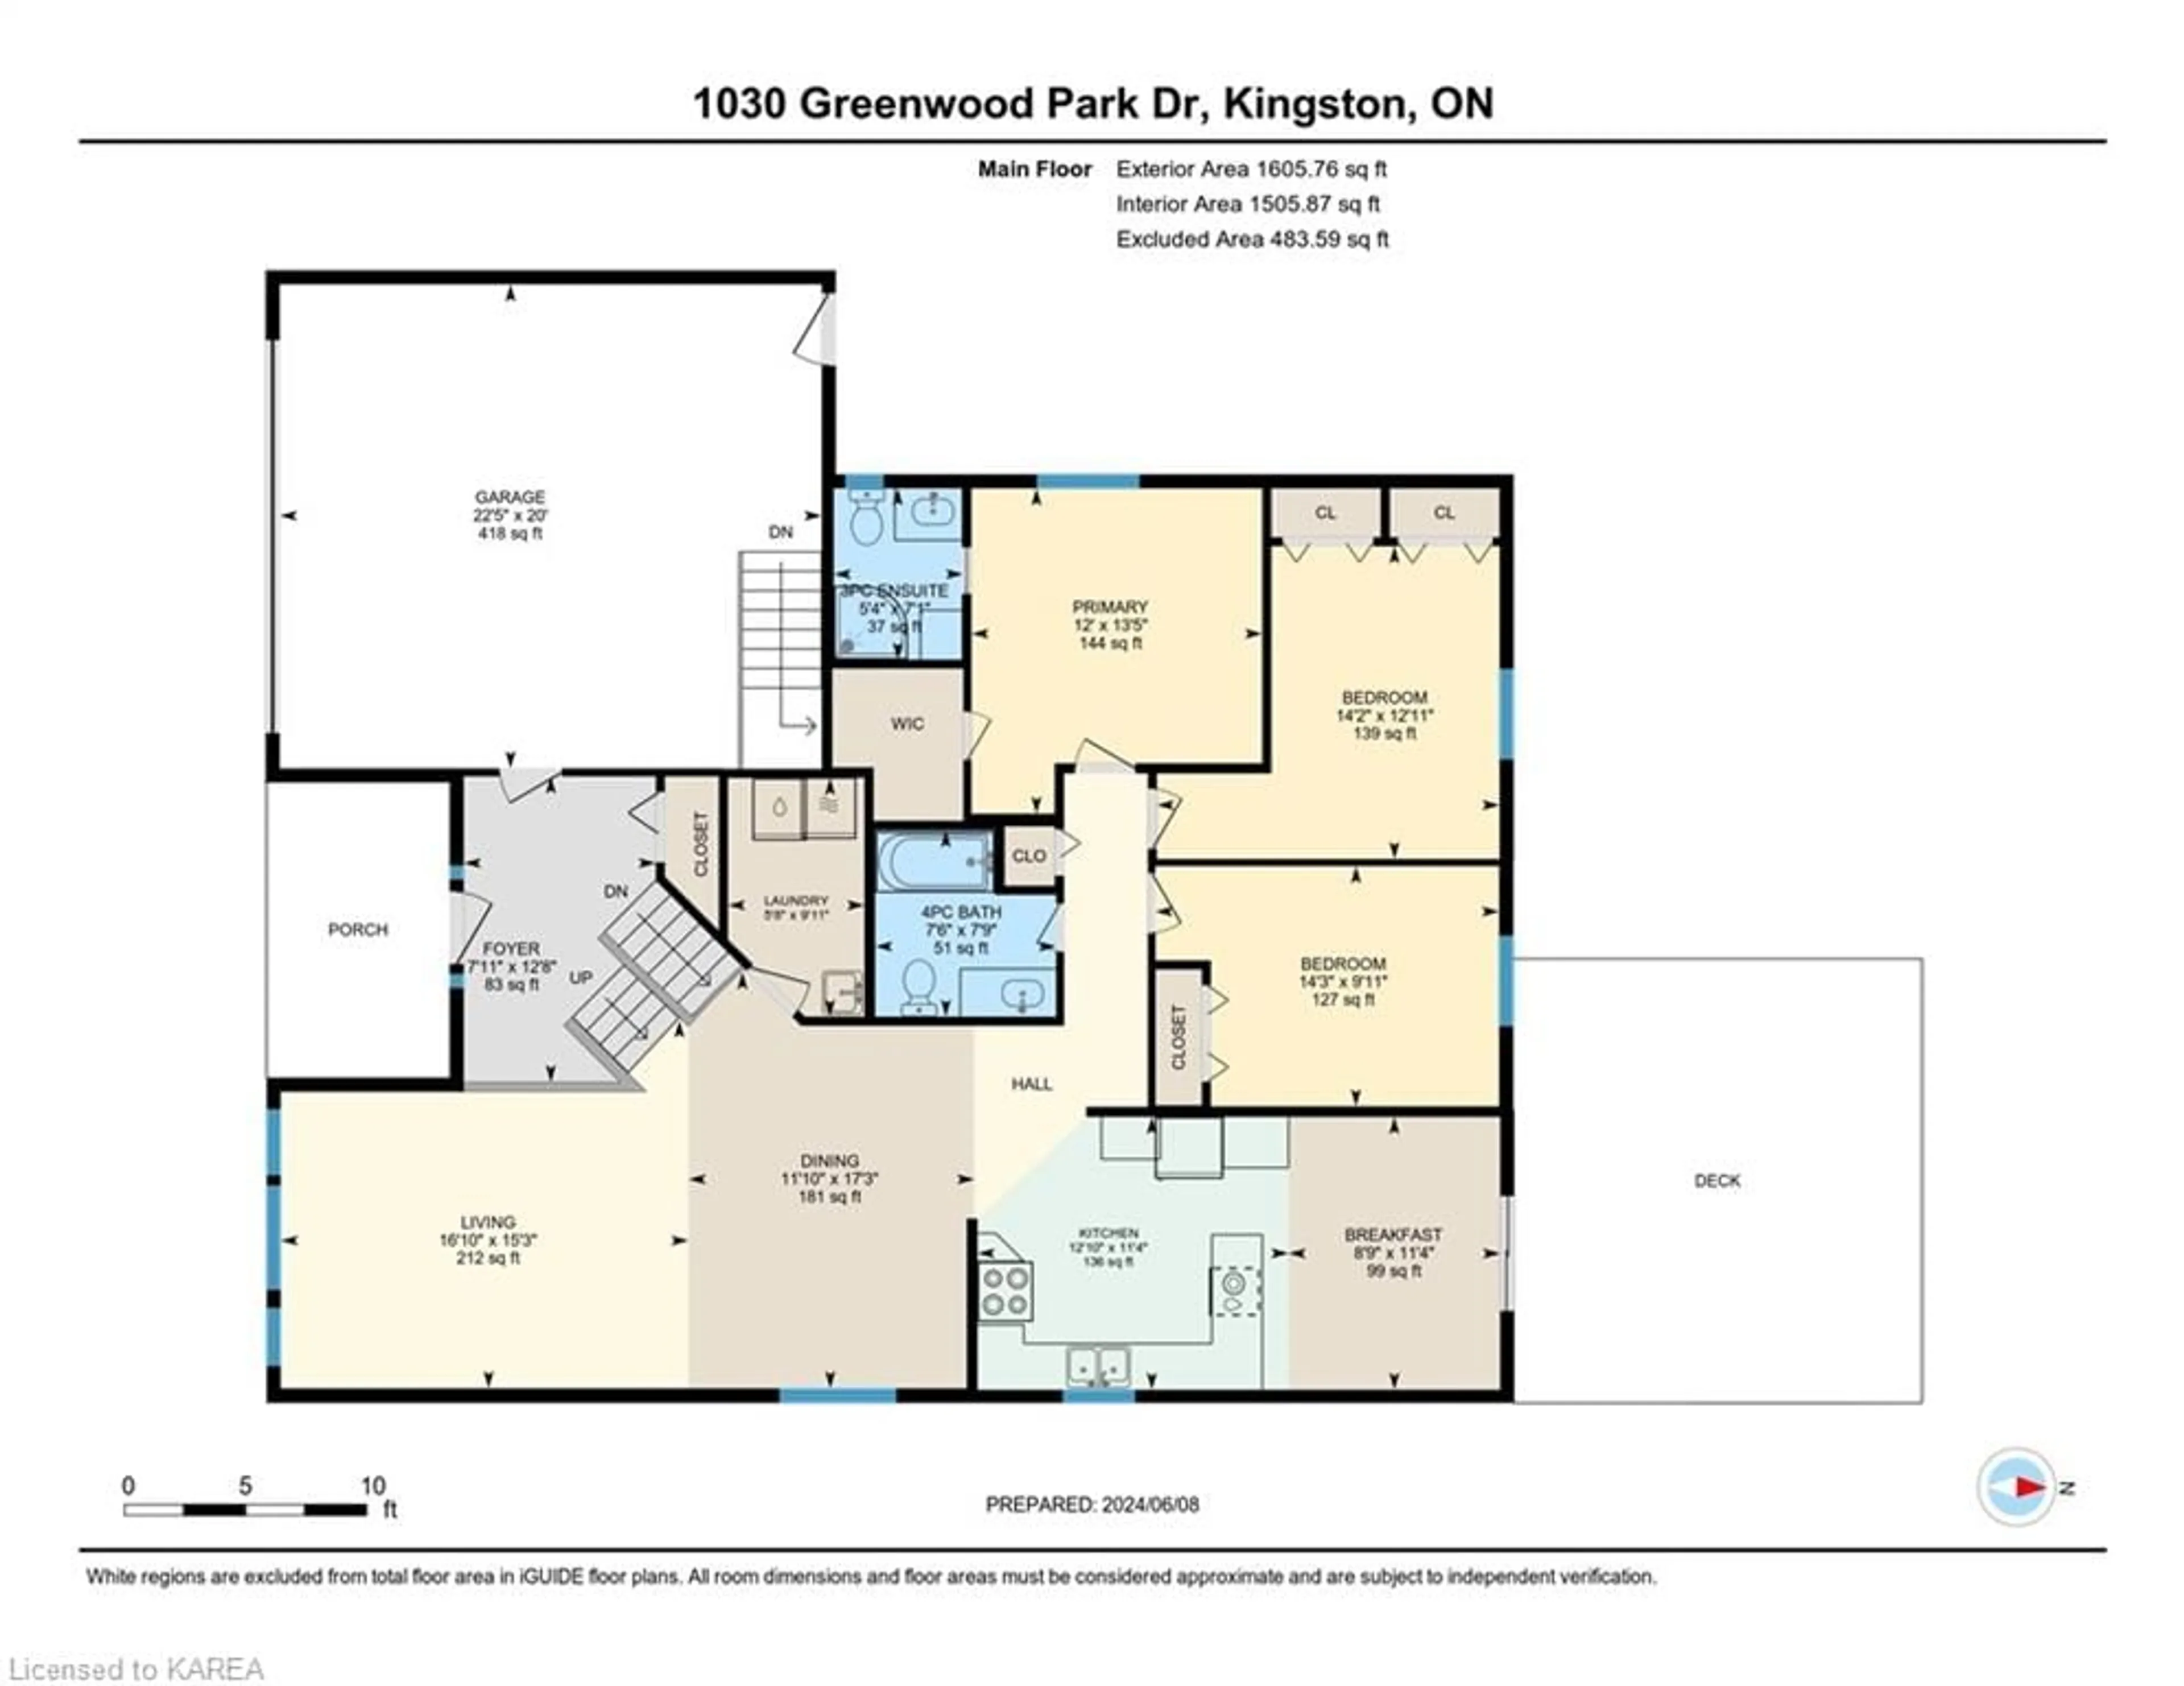 Floor plan for 1030 Greenwood Park Dr, Kingston Ontario K7K 7C7